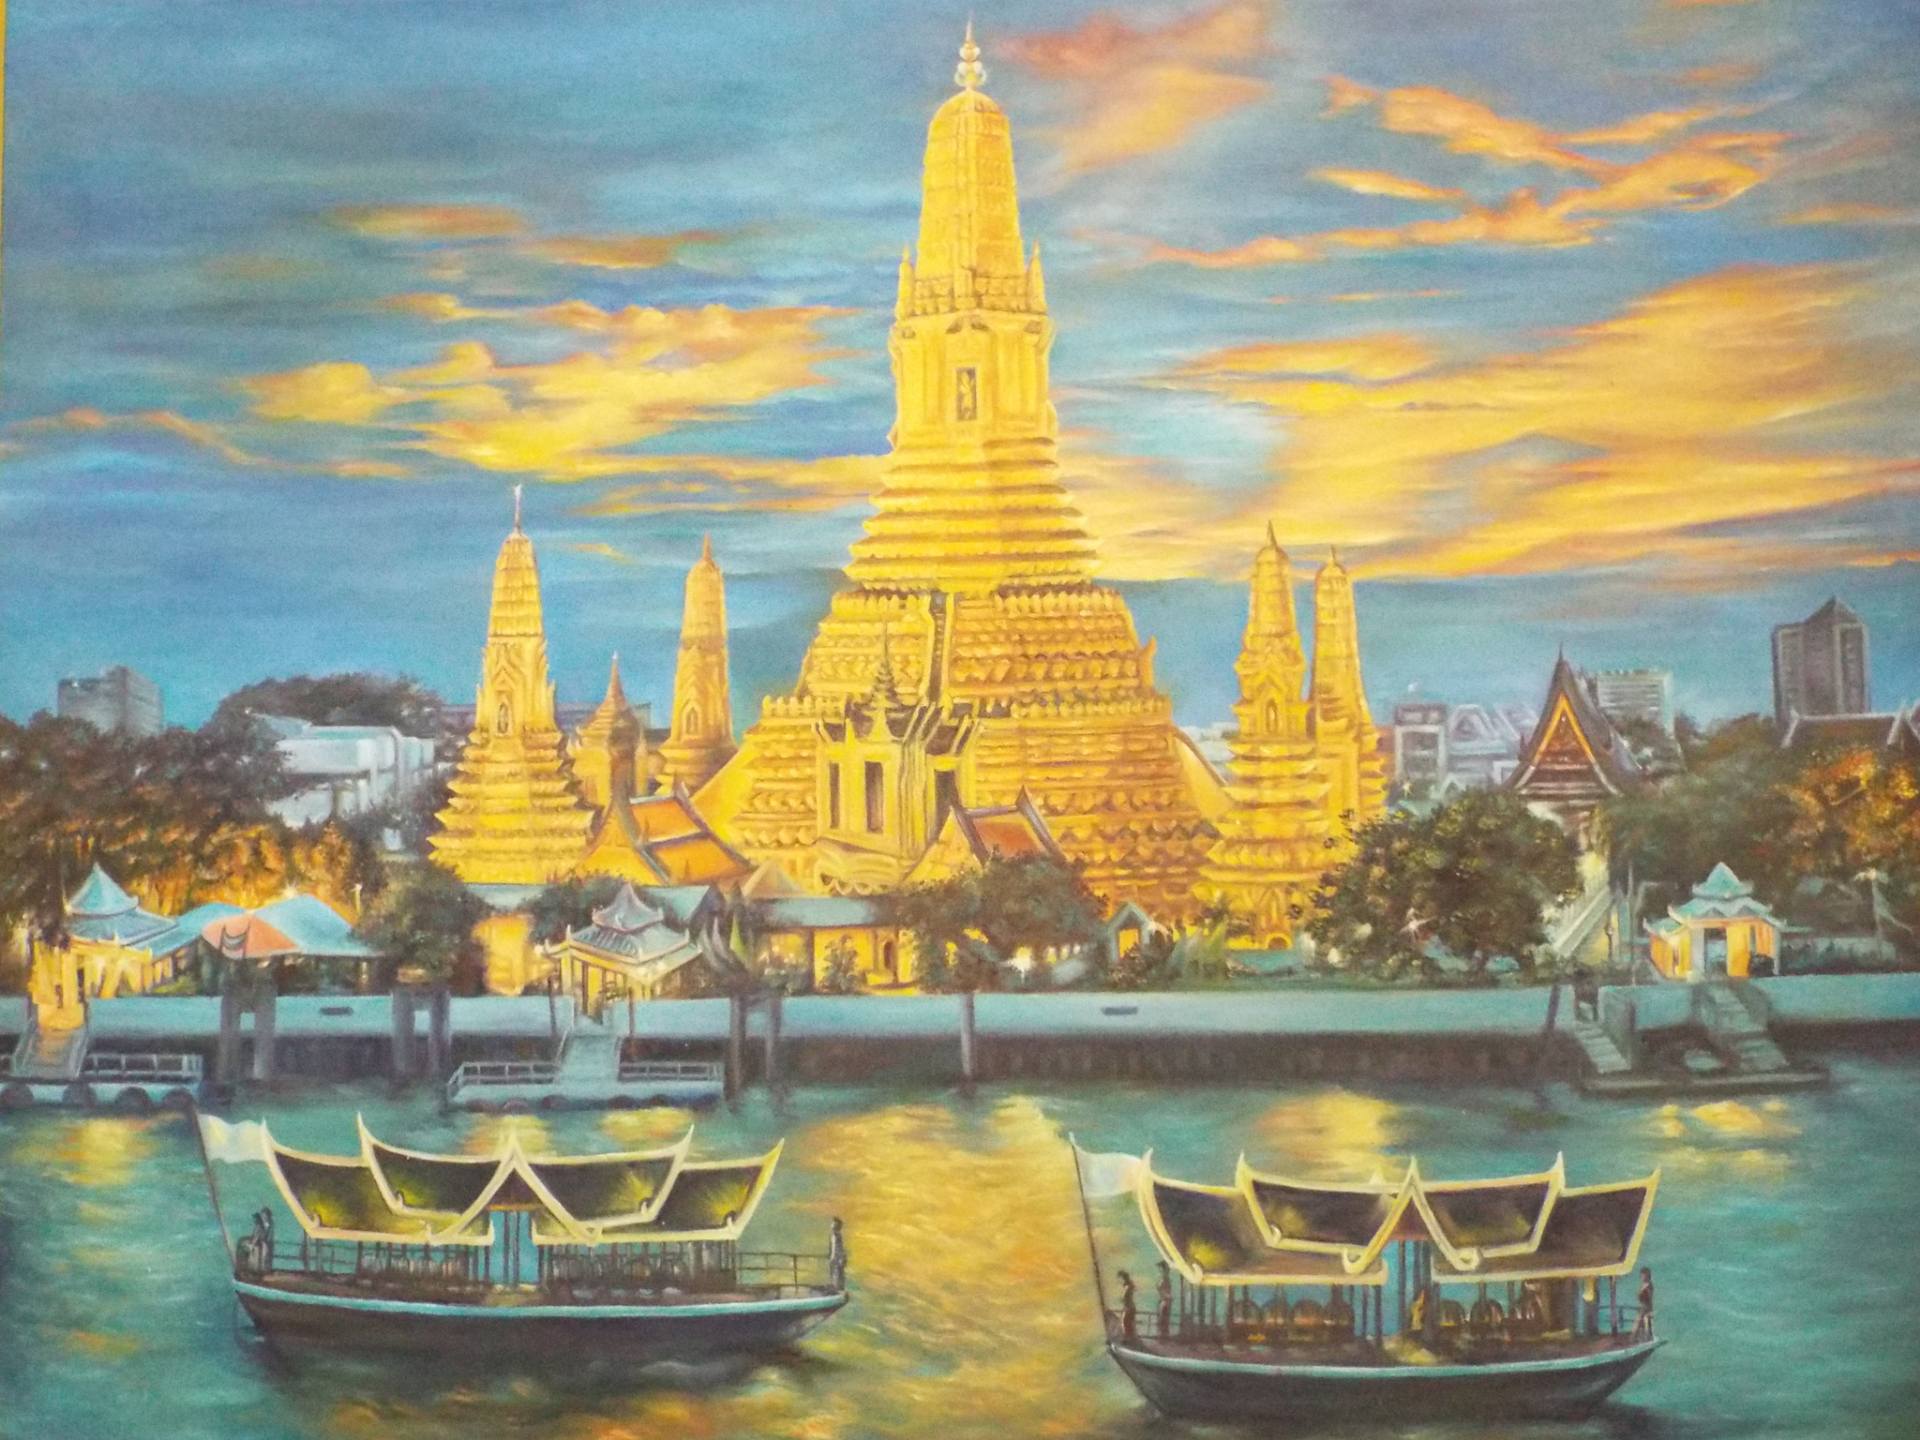 Saatchi Art: Wat Arun ,Bangkok. Painting by piman wongsangnoi